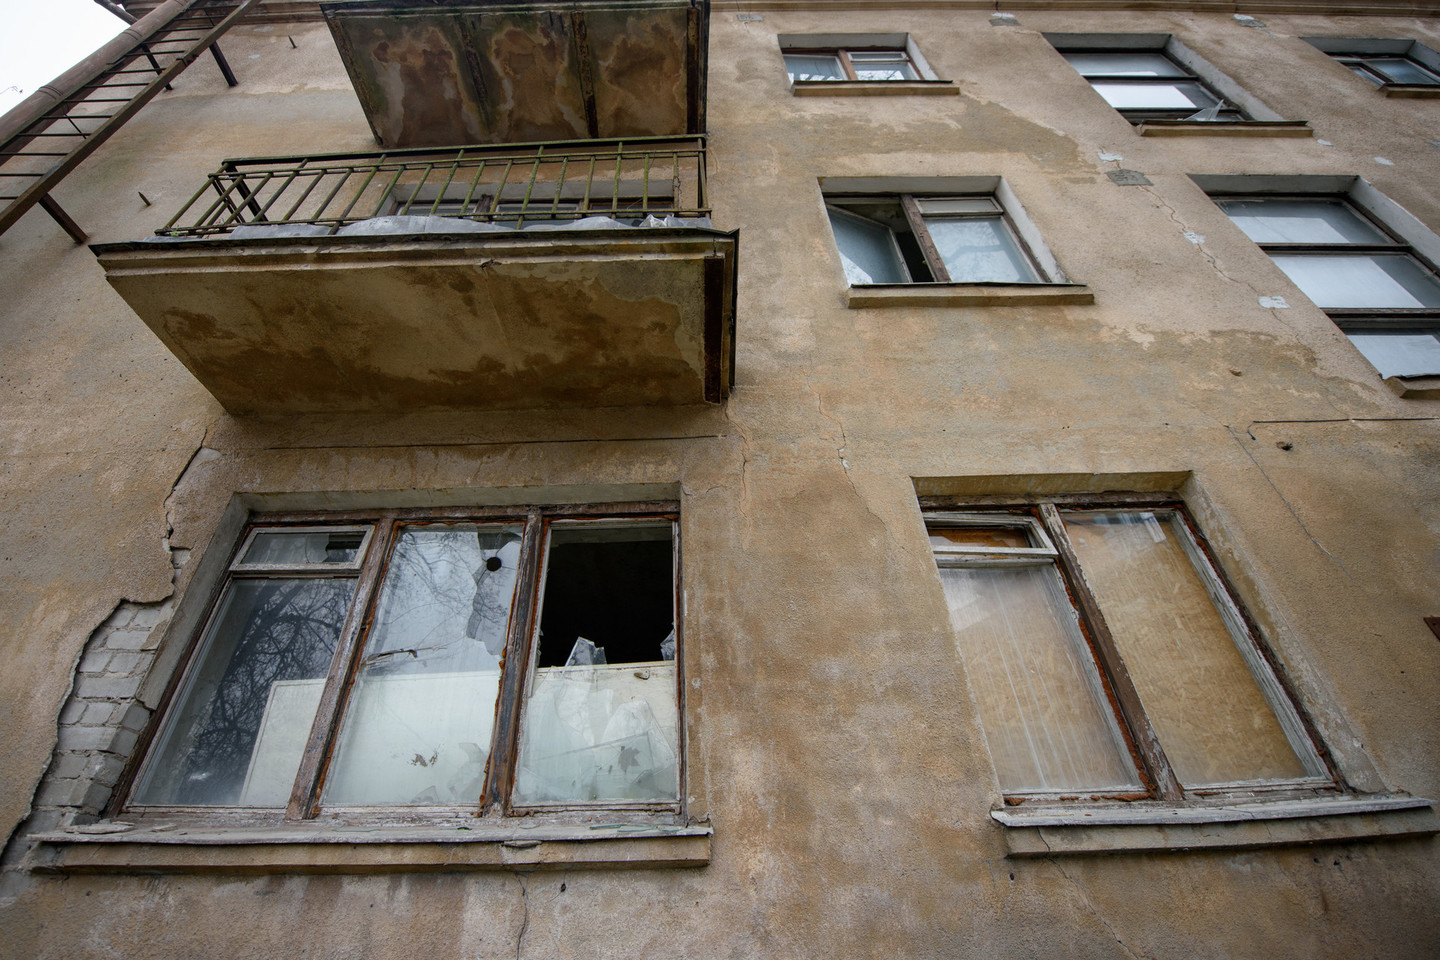 Pastatas vaiduoklis jau seniai stūkso Vilniaus savivaldybės pašonėje.<br>D.Umbraso nuotr.